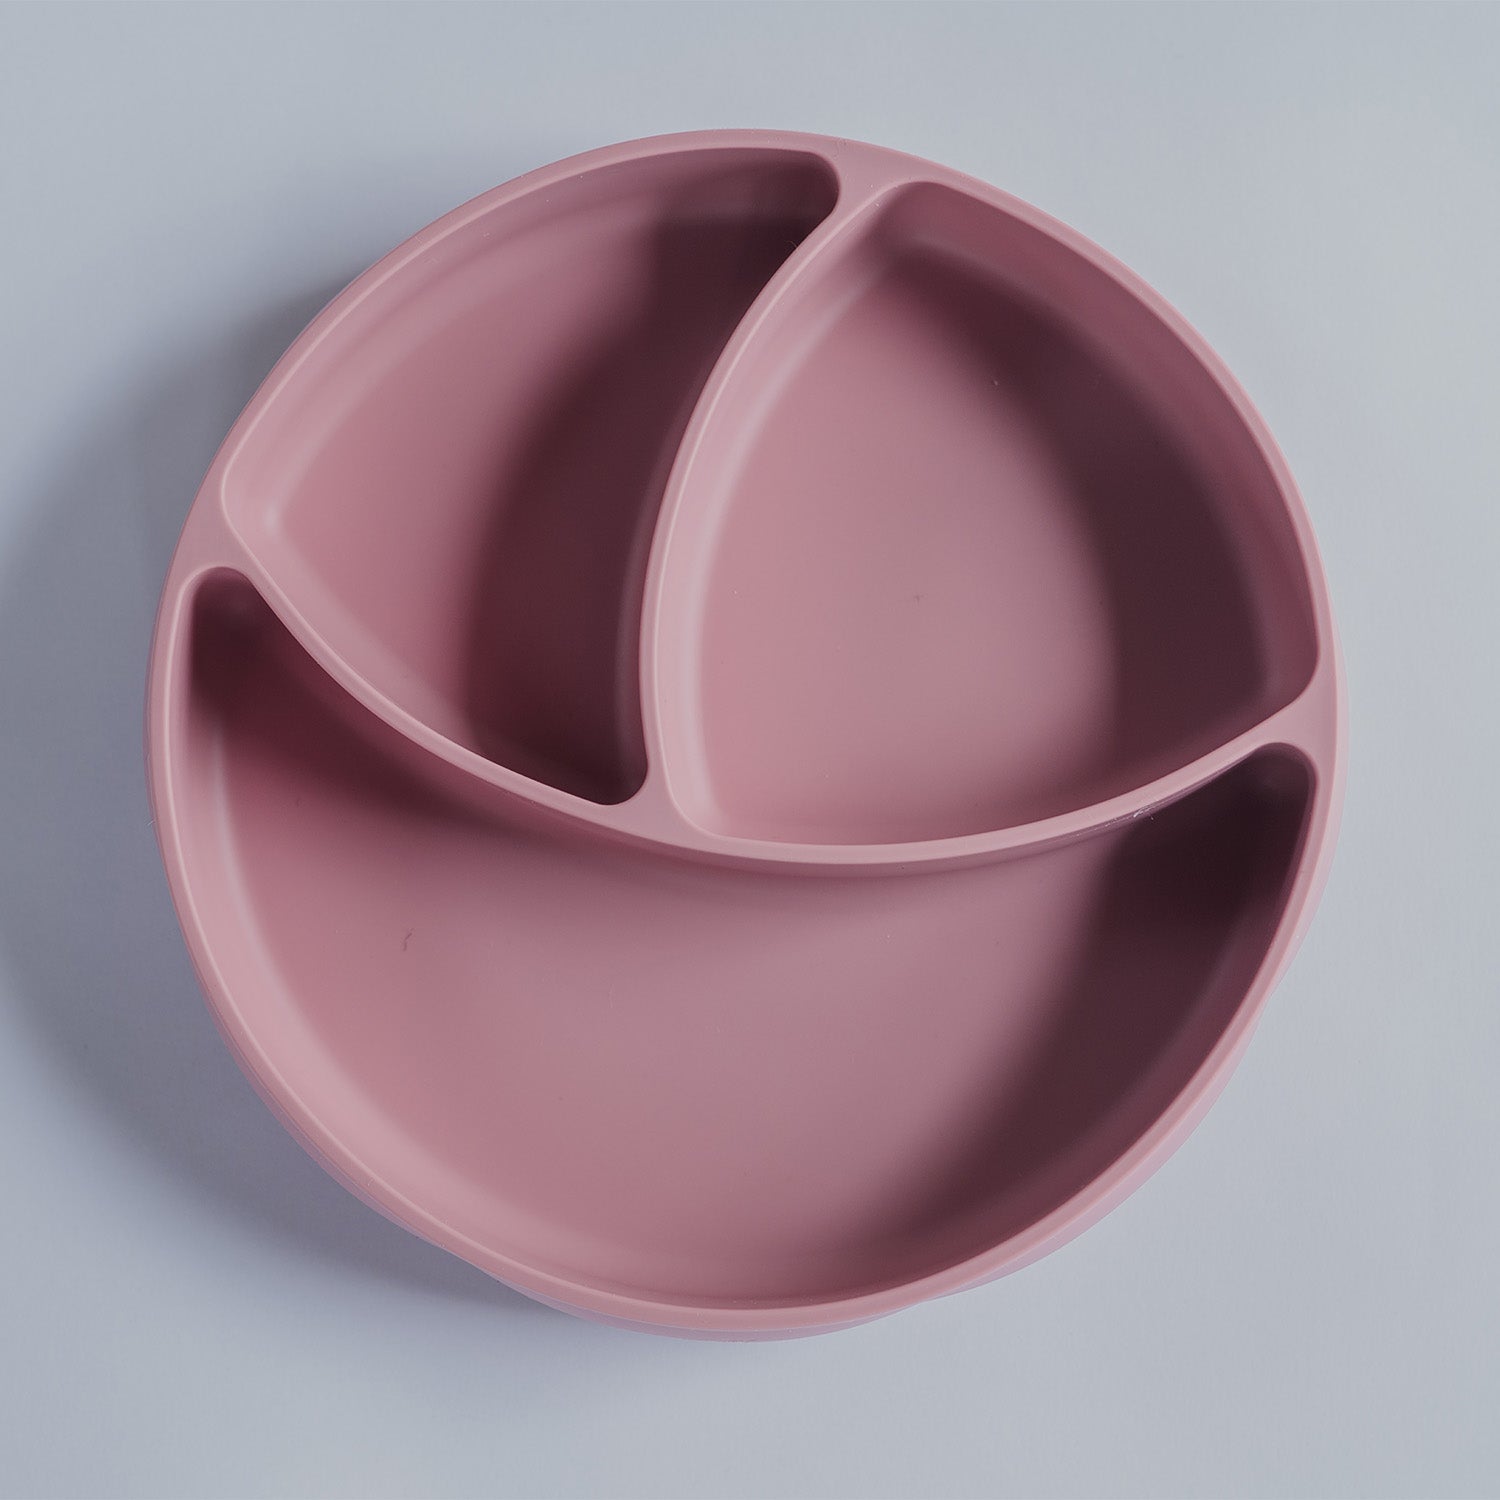 Moyoi ceramic tupperware